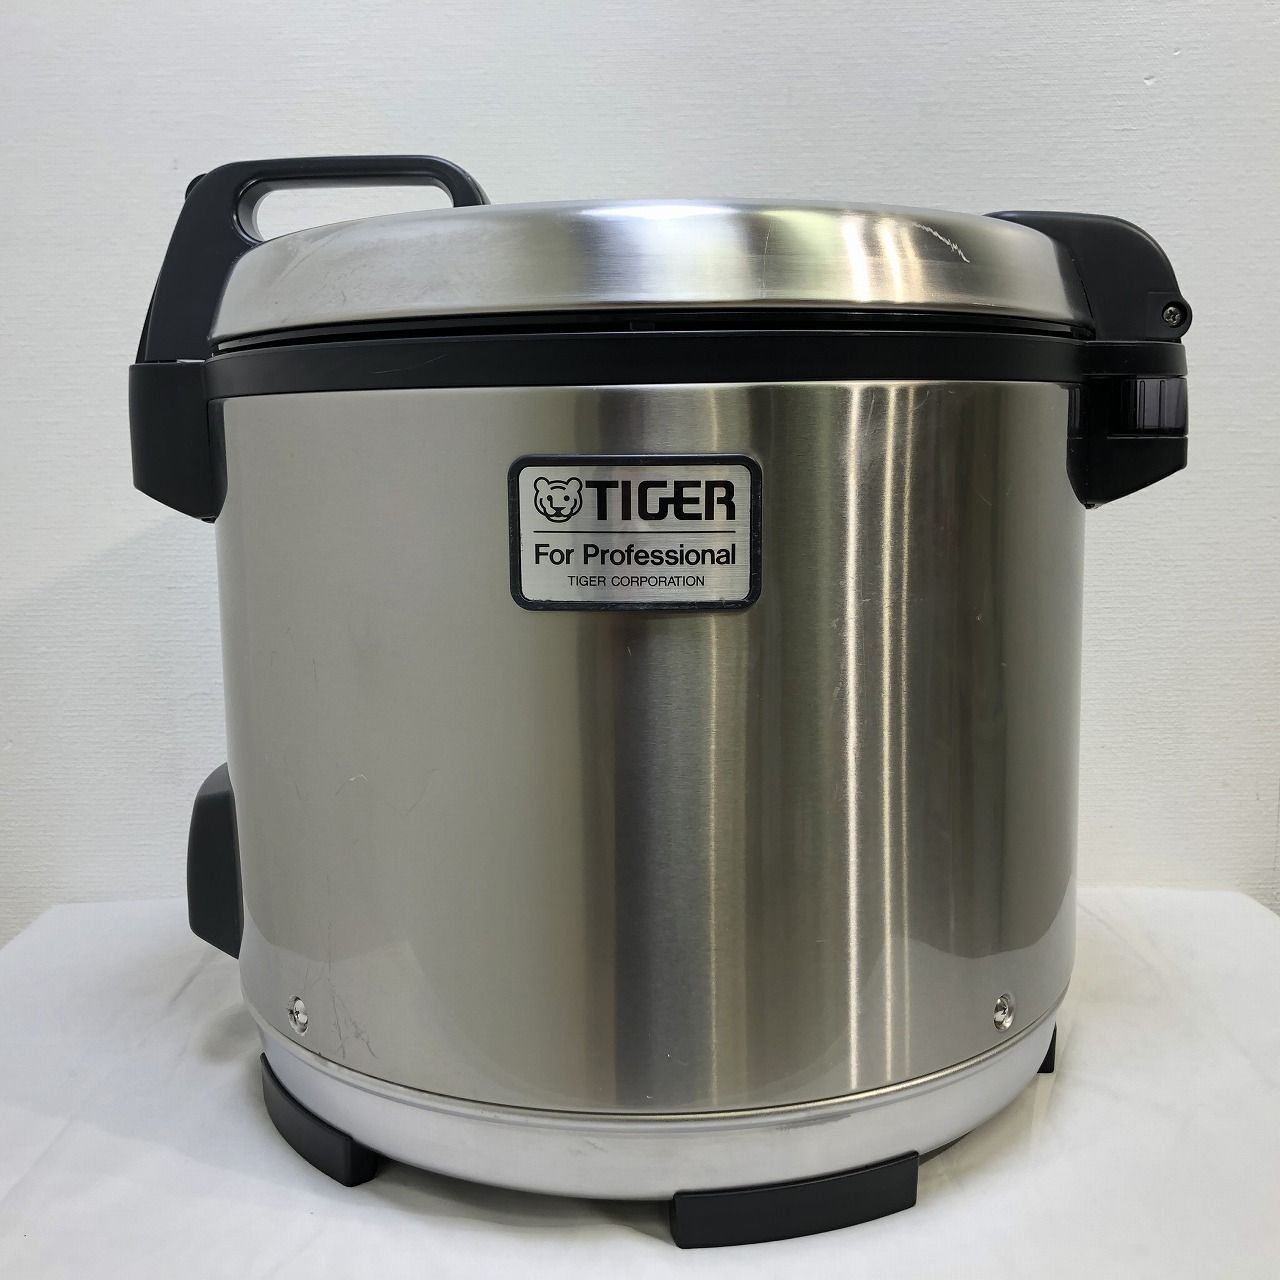 TIGER タイガー 業務用ジャー炊飯器 【炊きたて】 2升炊き JNO-A360 F 再良市場 メルカリ